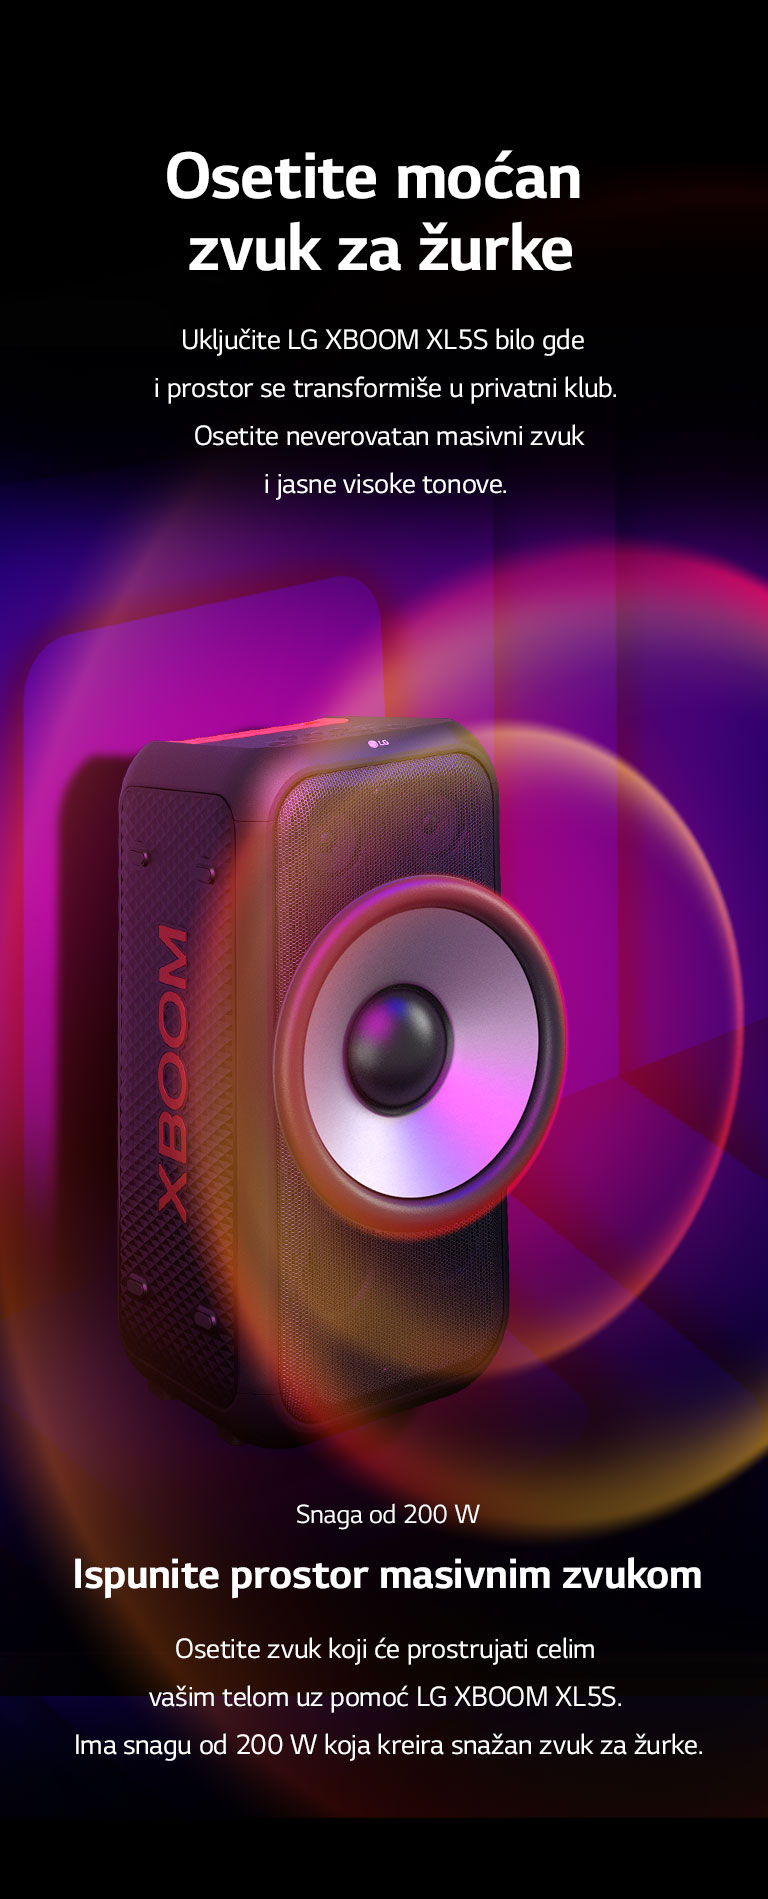 LG XBOOM XL5S je postavljen u beskonačnom prostoru. Na zidu je ilustrovana četvrtasta grafika zvuka. U sredini zvučnika uveličan je džinovski niskotonac od 6,5 inča da bi se istakao zvuk od 200 W. Zvučni talasi dolaze iz niskotonca.